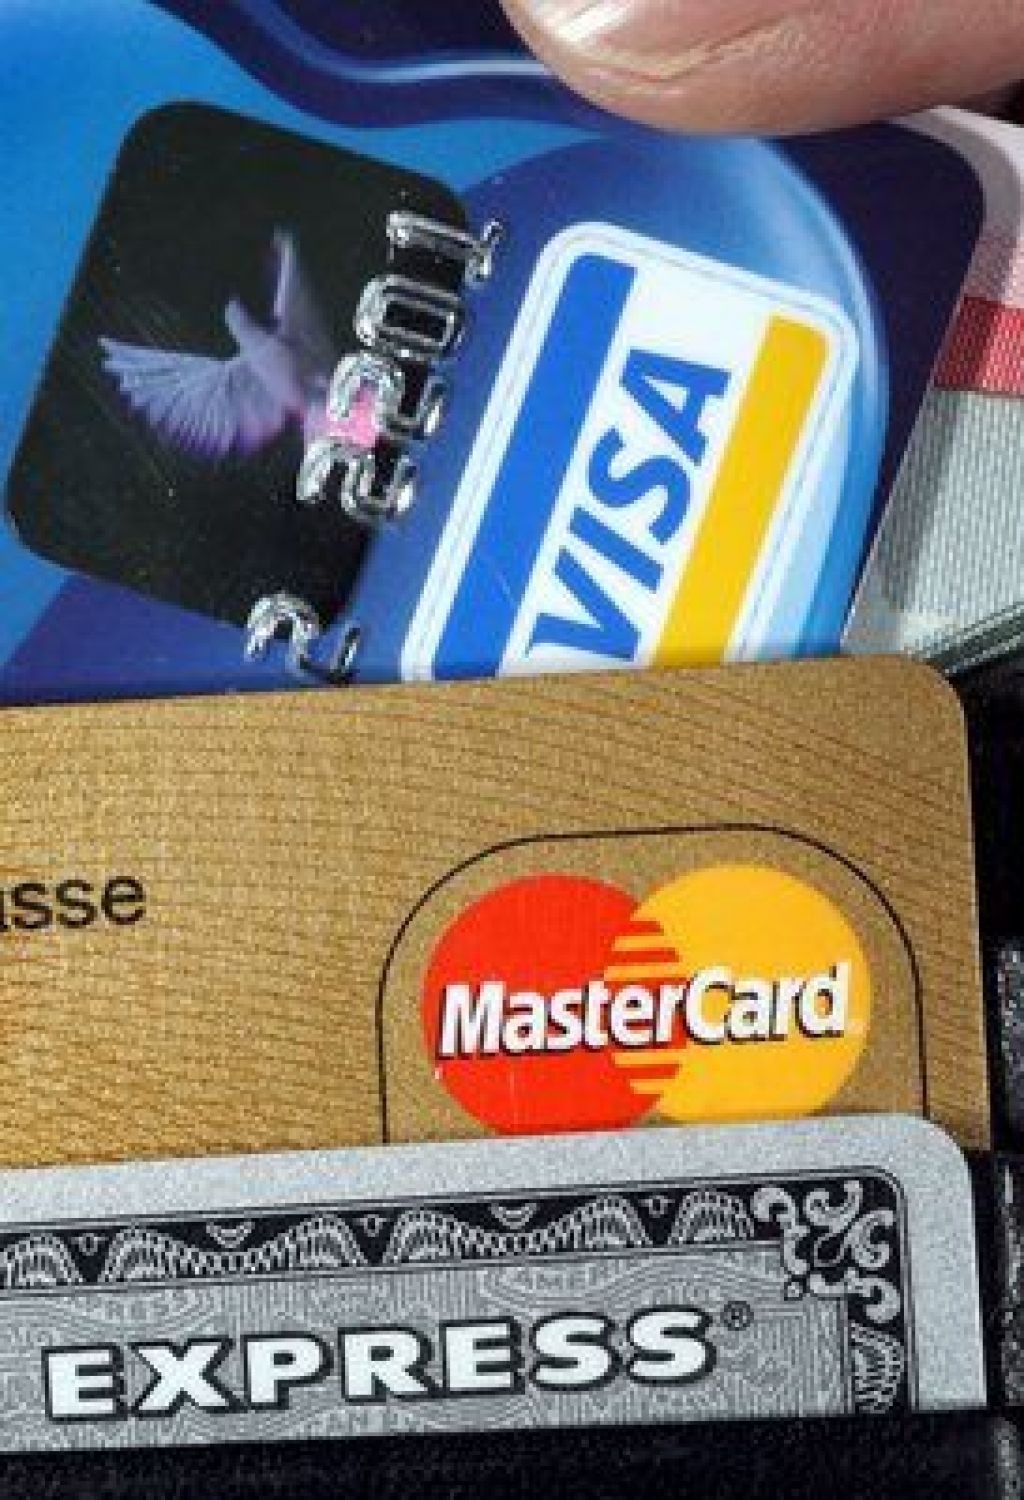 Senatorji zagrozili bankam zaradi kreditnih kartic